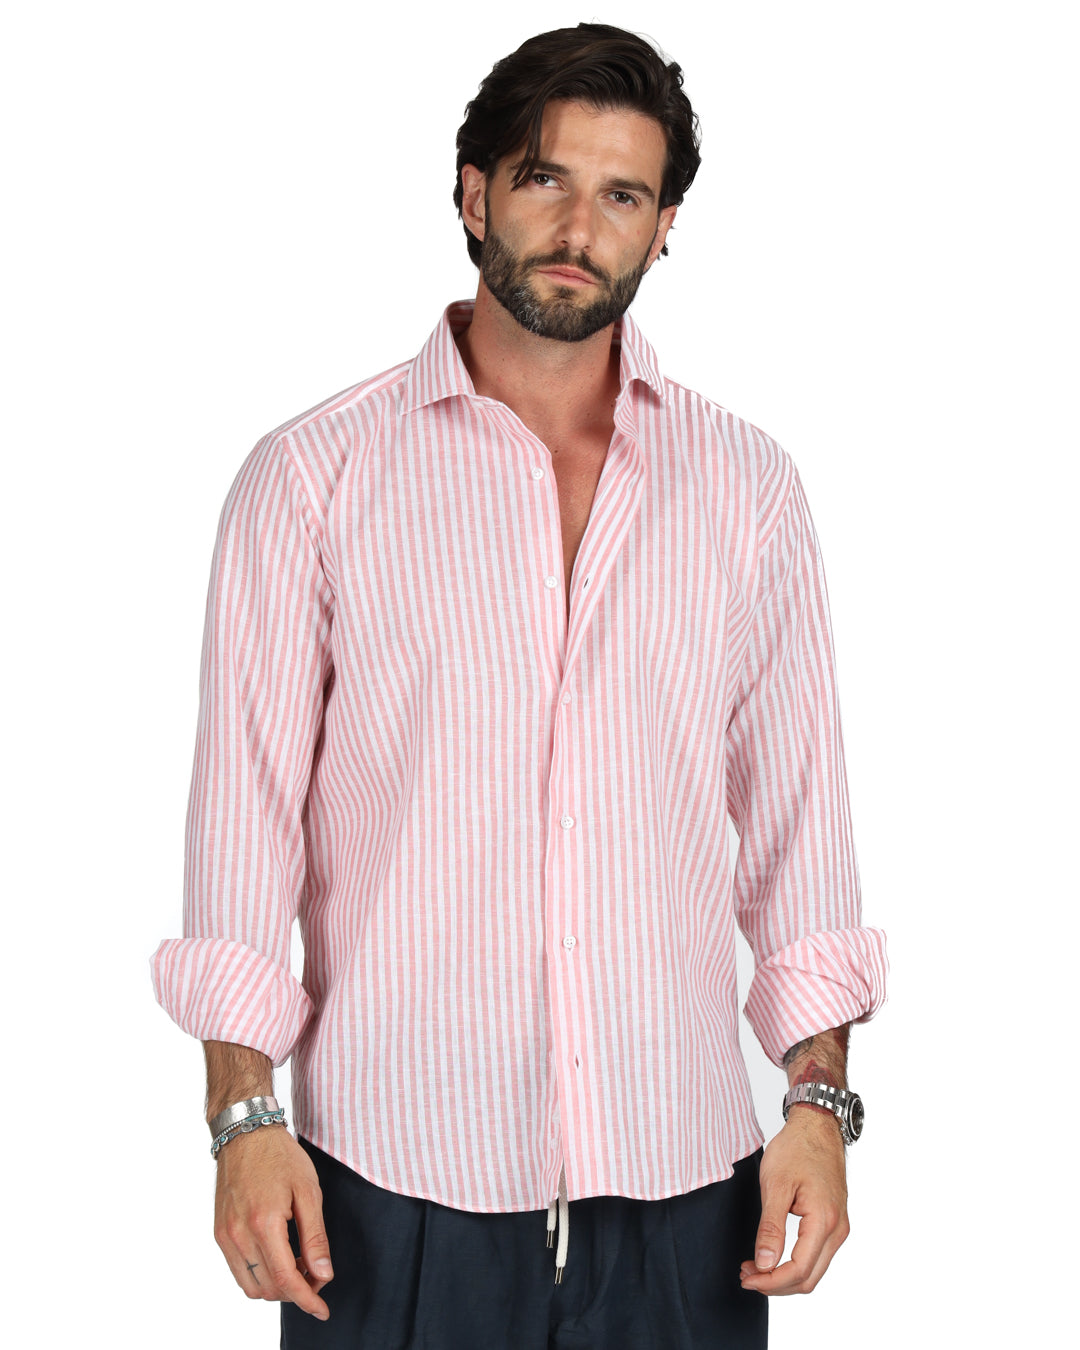 Ischia - Camicia classica righe strette rosa in lino